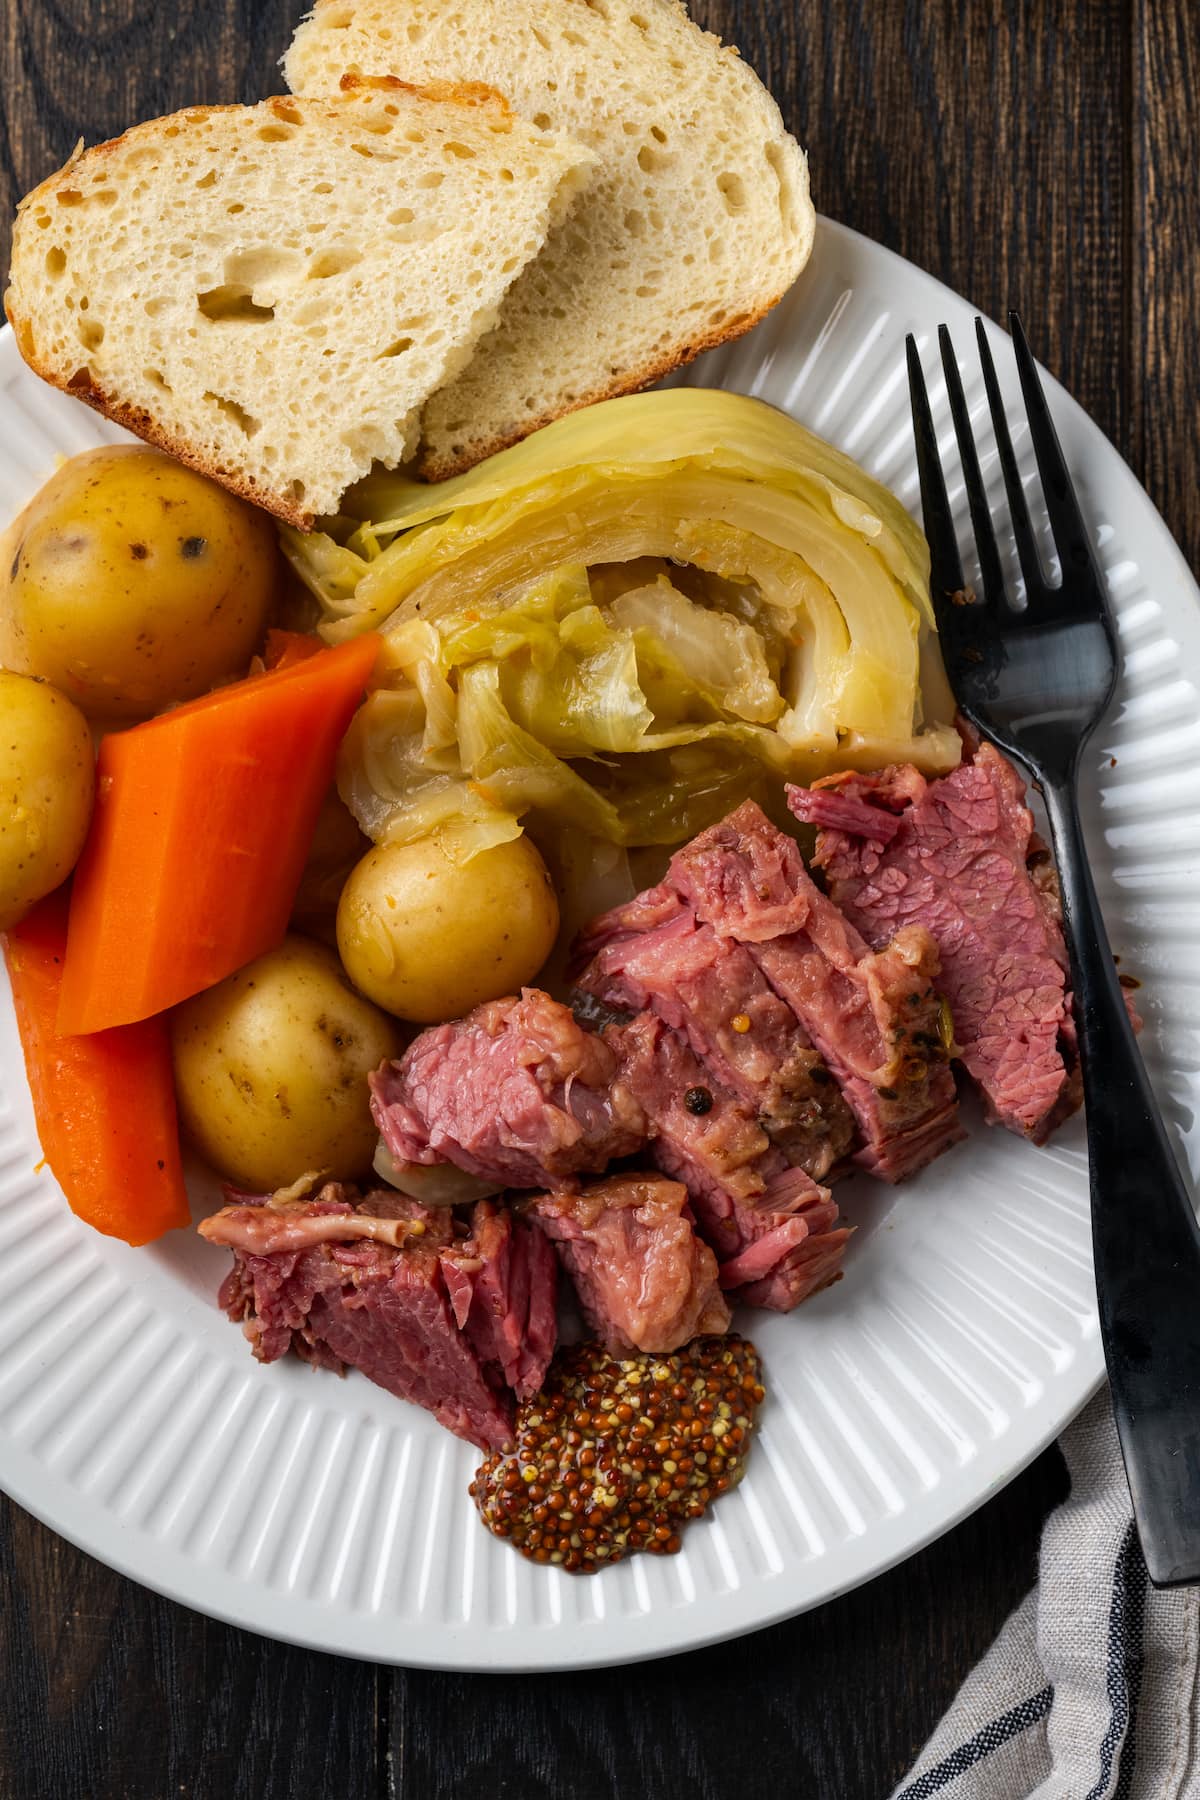 Draufsicht auf geschnittenes Corned Beef auf einem Teller mit Kohl, Kartoffeln, Karotten und Brotscheiben, daneben eine Gabel.